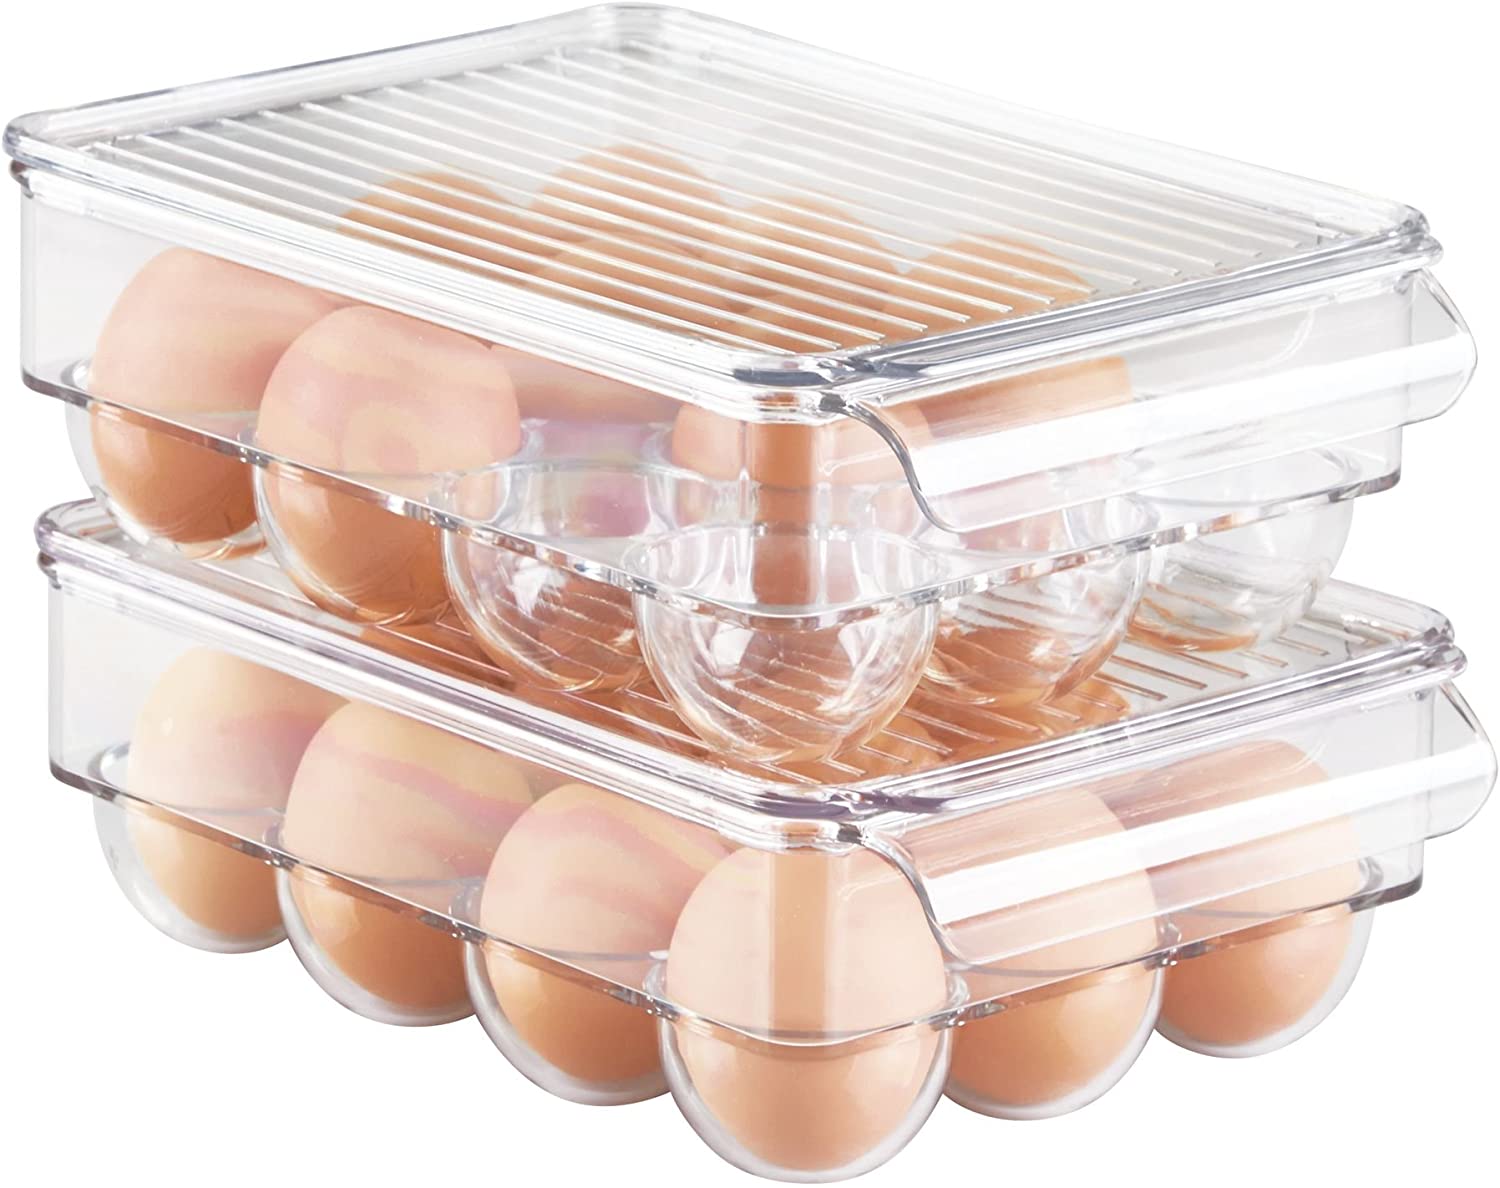 Huevera Cuadrada Transparente Capacidad 12 huevos